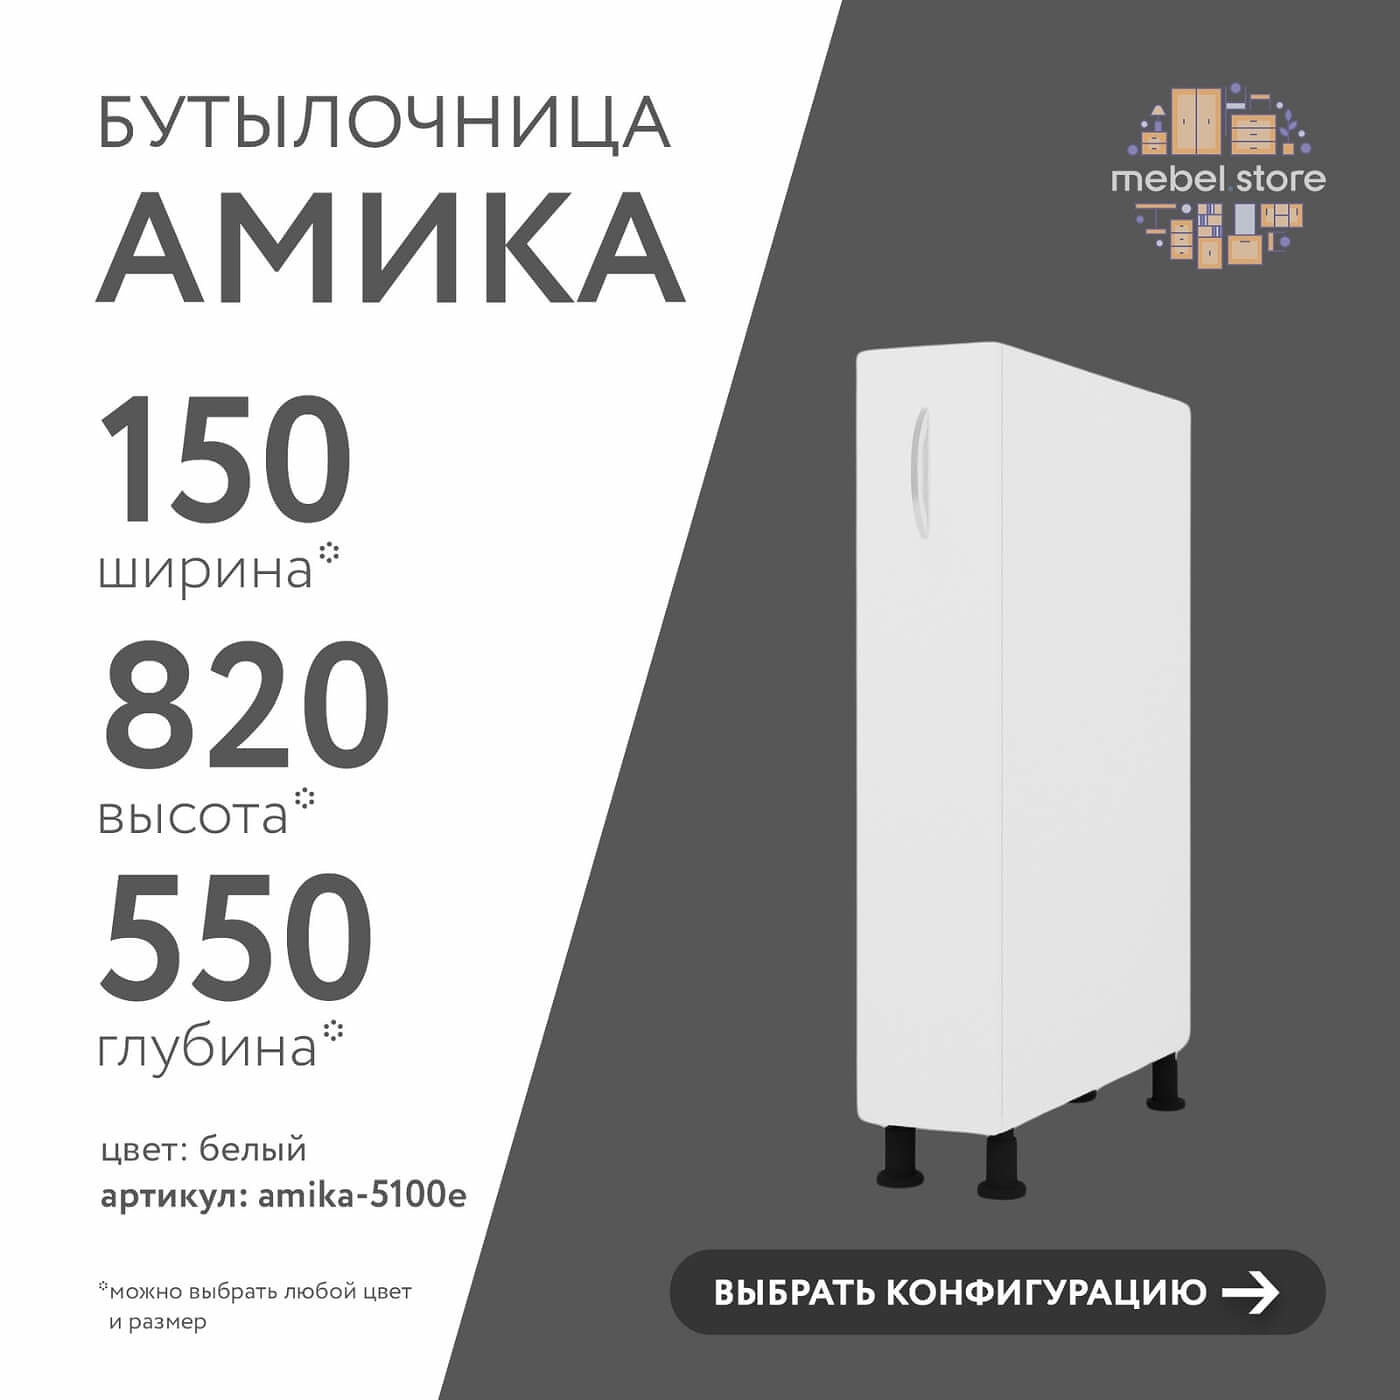 Бутылочница Амика-5100e минимализм для кухни - фото 1 large